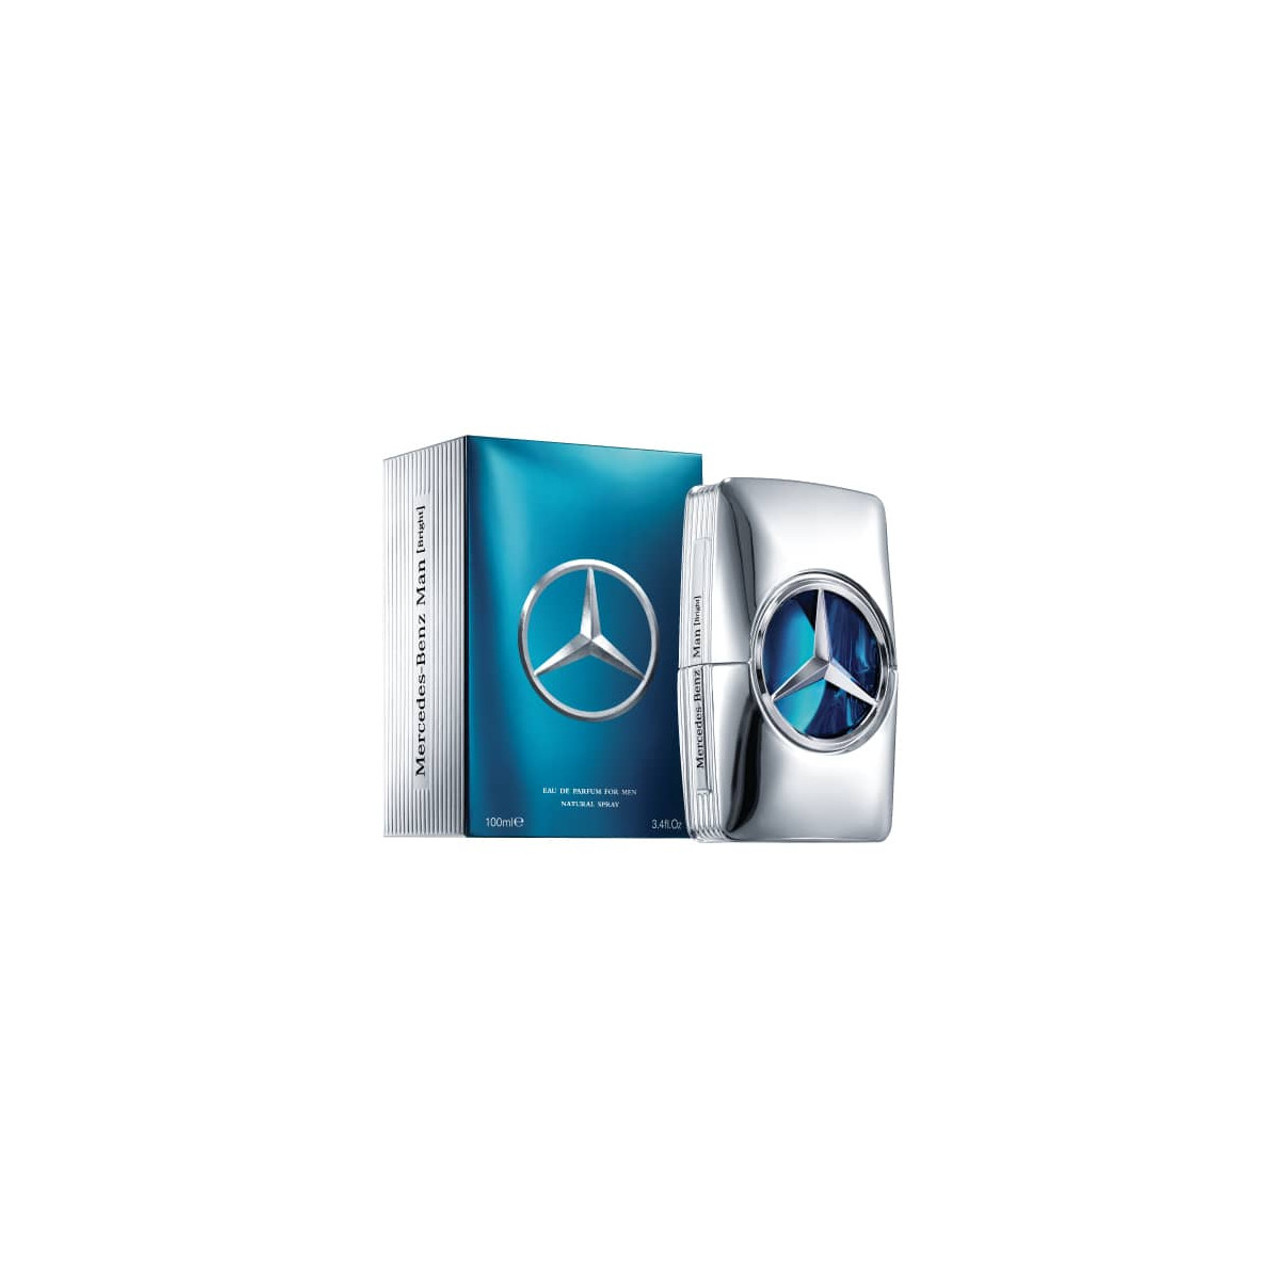 Mercedes-Benz Man Eau de Toilette Fragrance Collection - Macy's